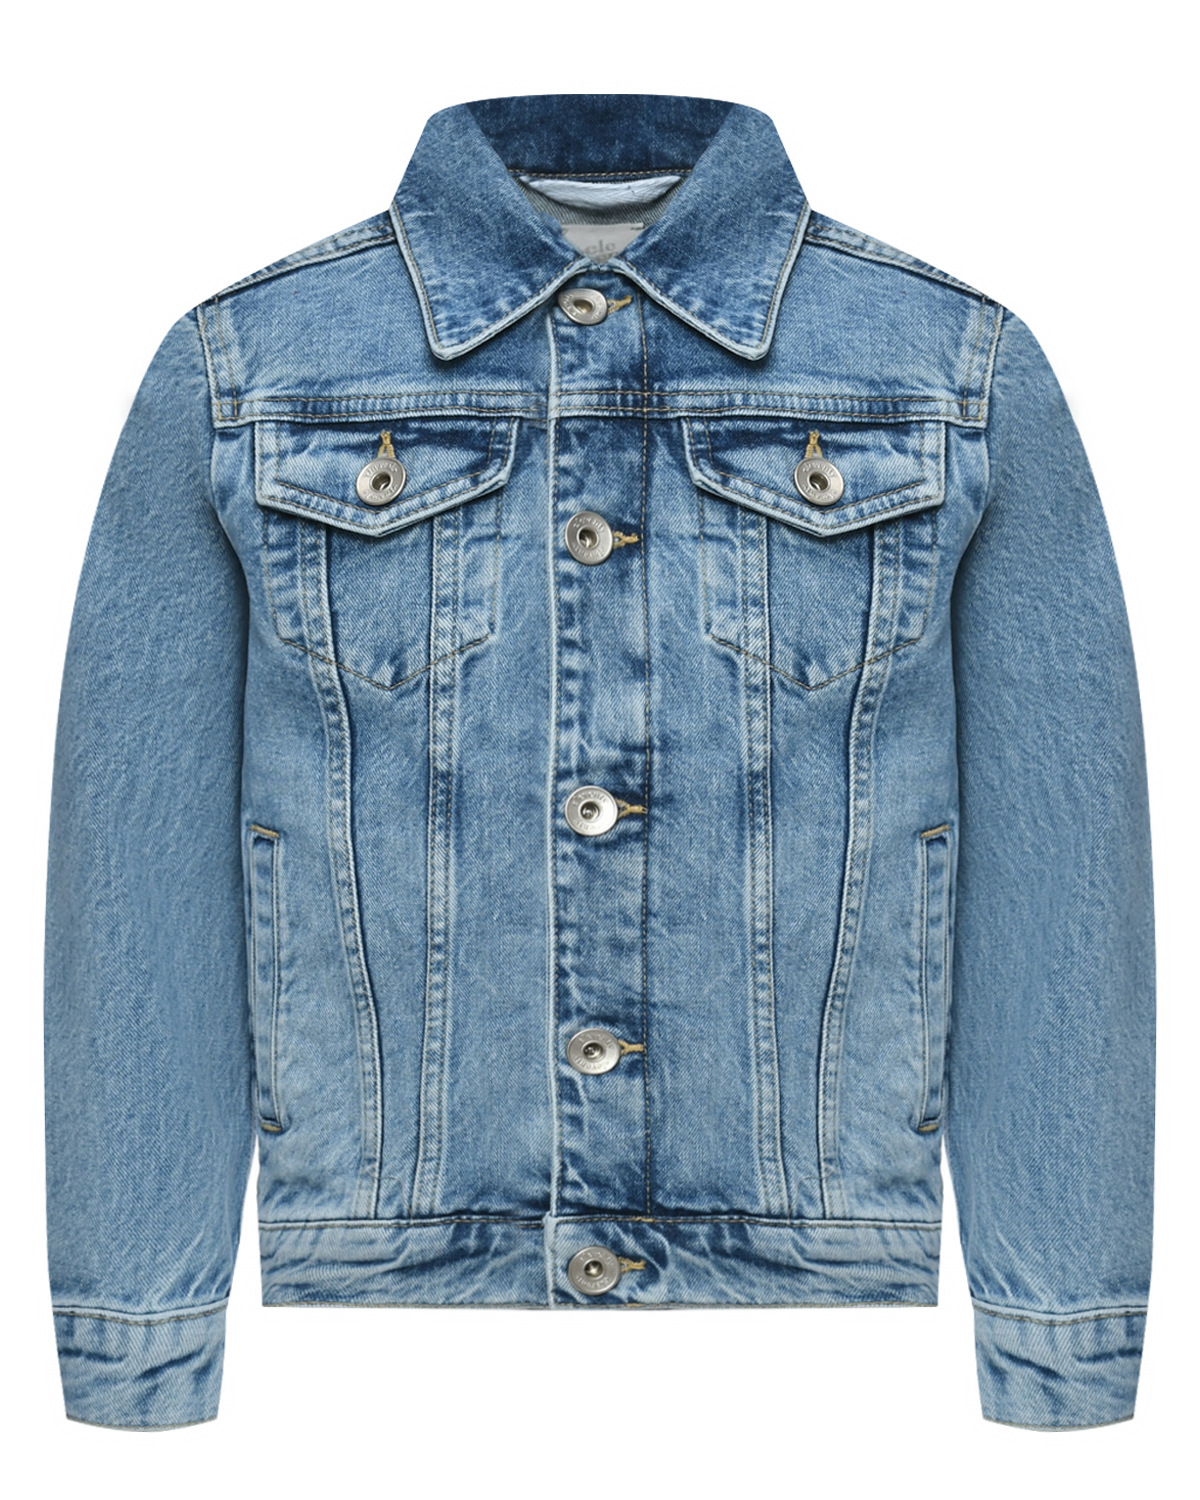 Джинсовая куртка, голубая Eleventy, размер 164, цвет нет цвета - фото 1